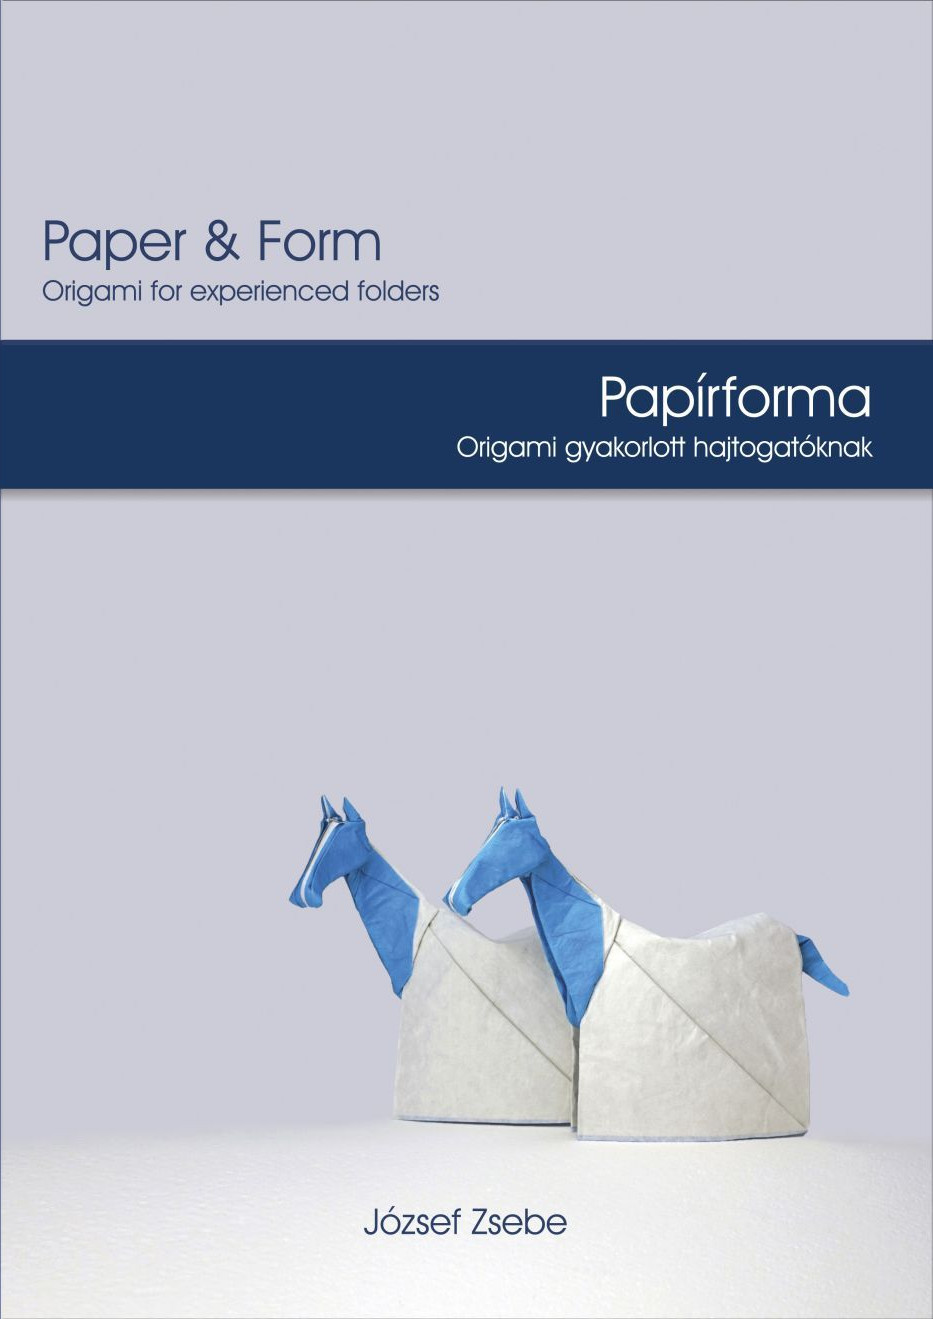 Paper & Form - Papírforma : page 40.